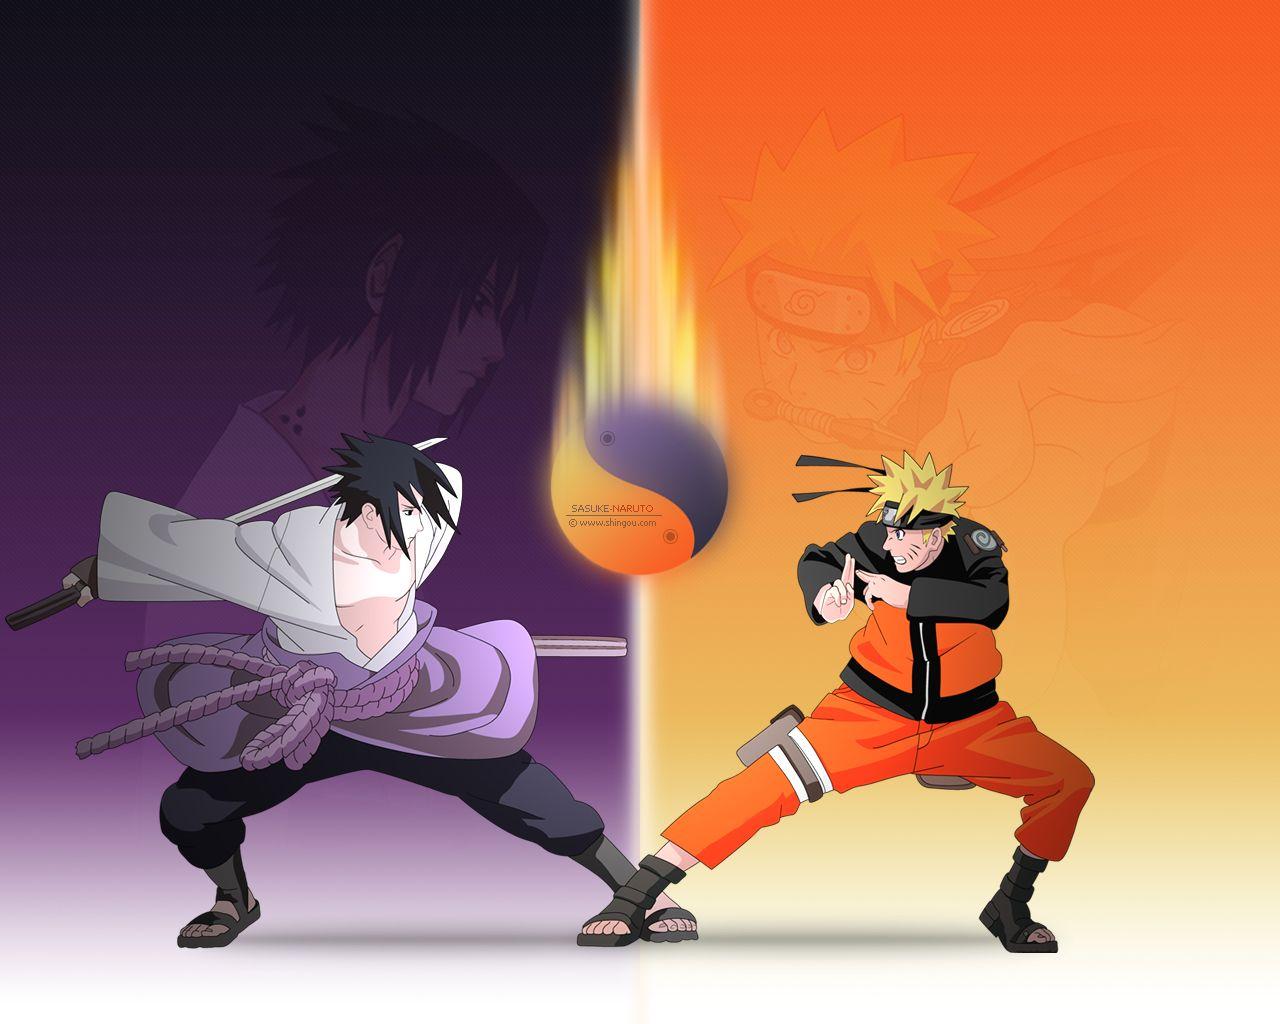 Sasuke vs Naruto by shingou.